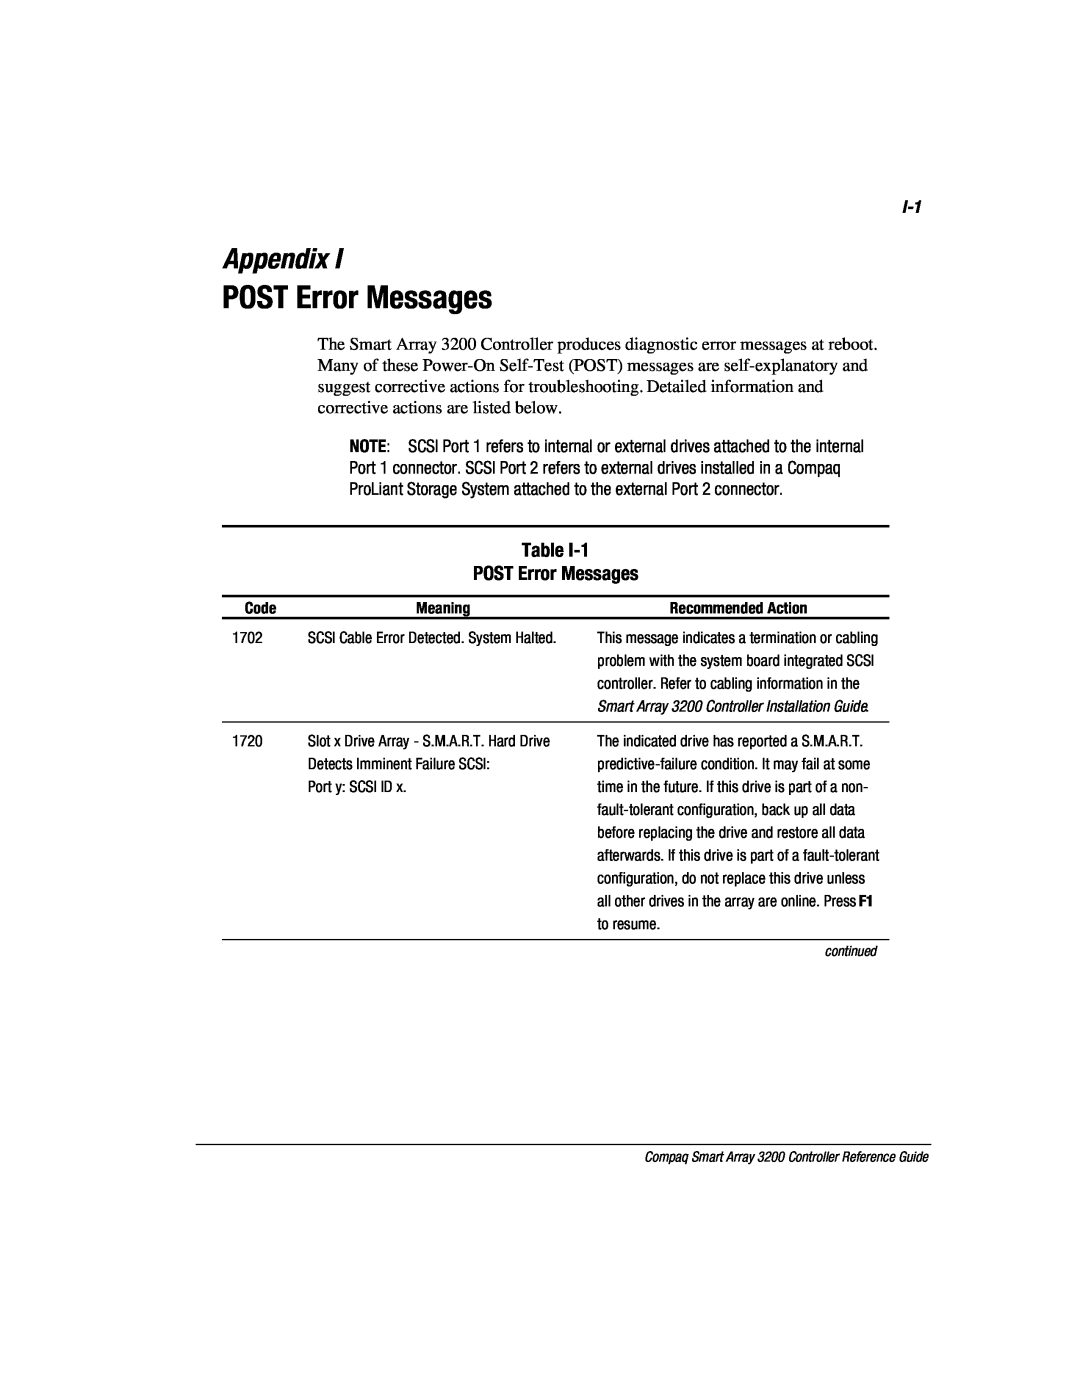 Compaq 3200 manual POST Error Messages, Appendix 